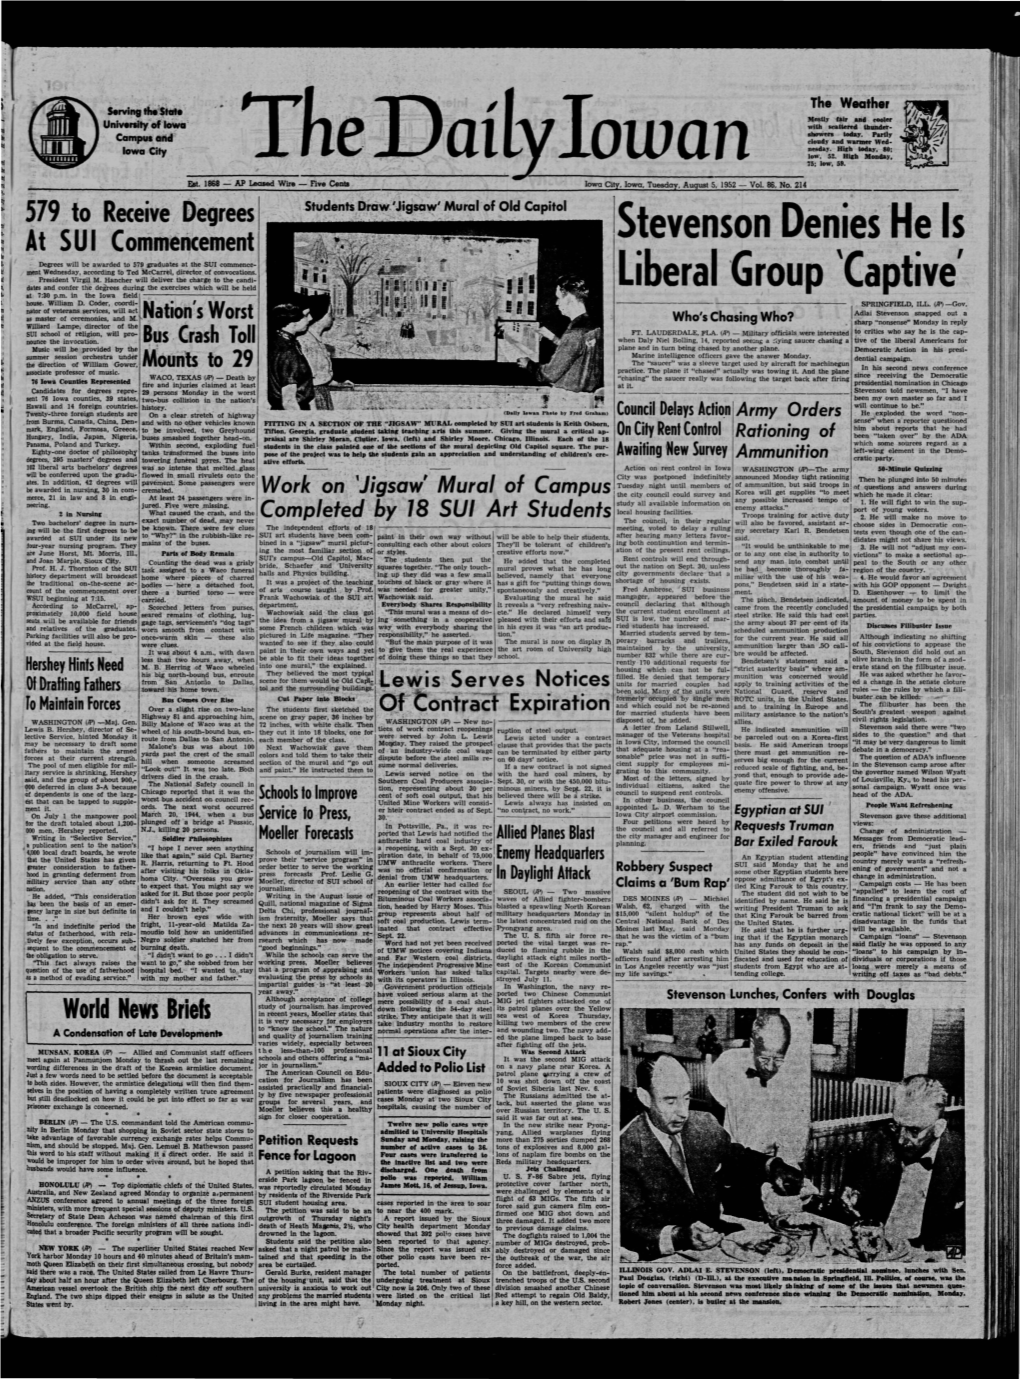 Daily Iowan (Iowa City, Iowa), 1952-08-05